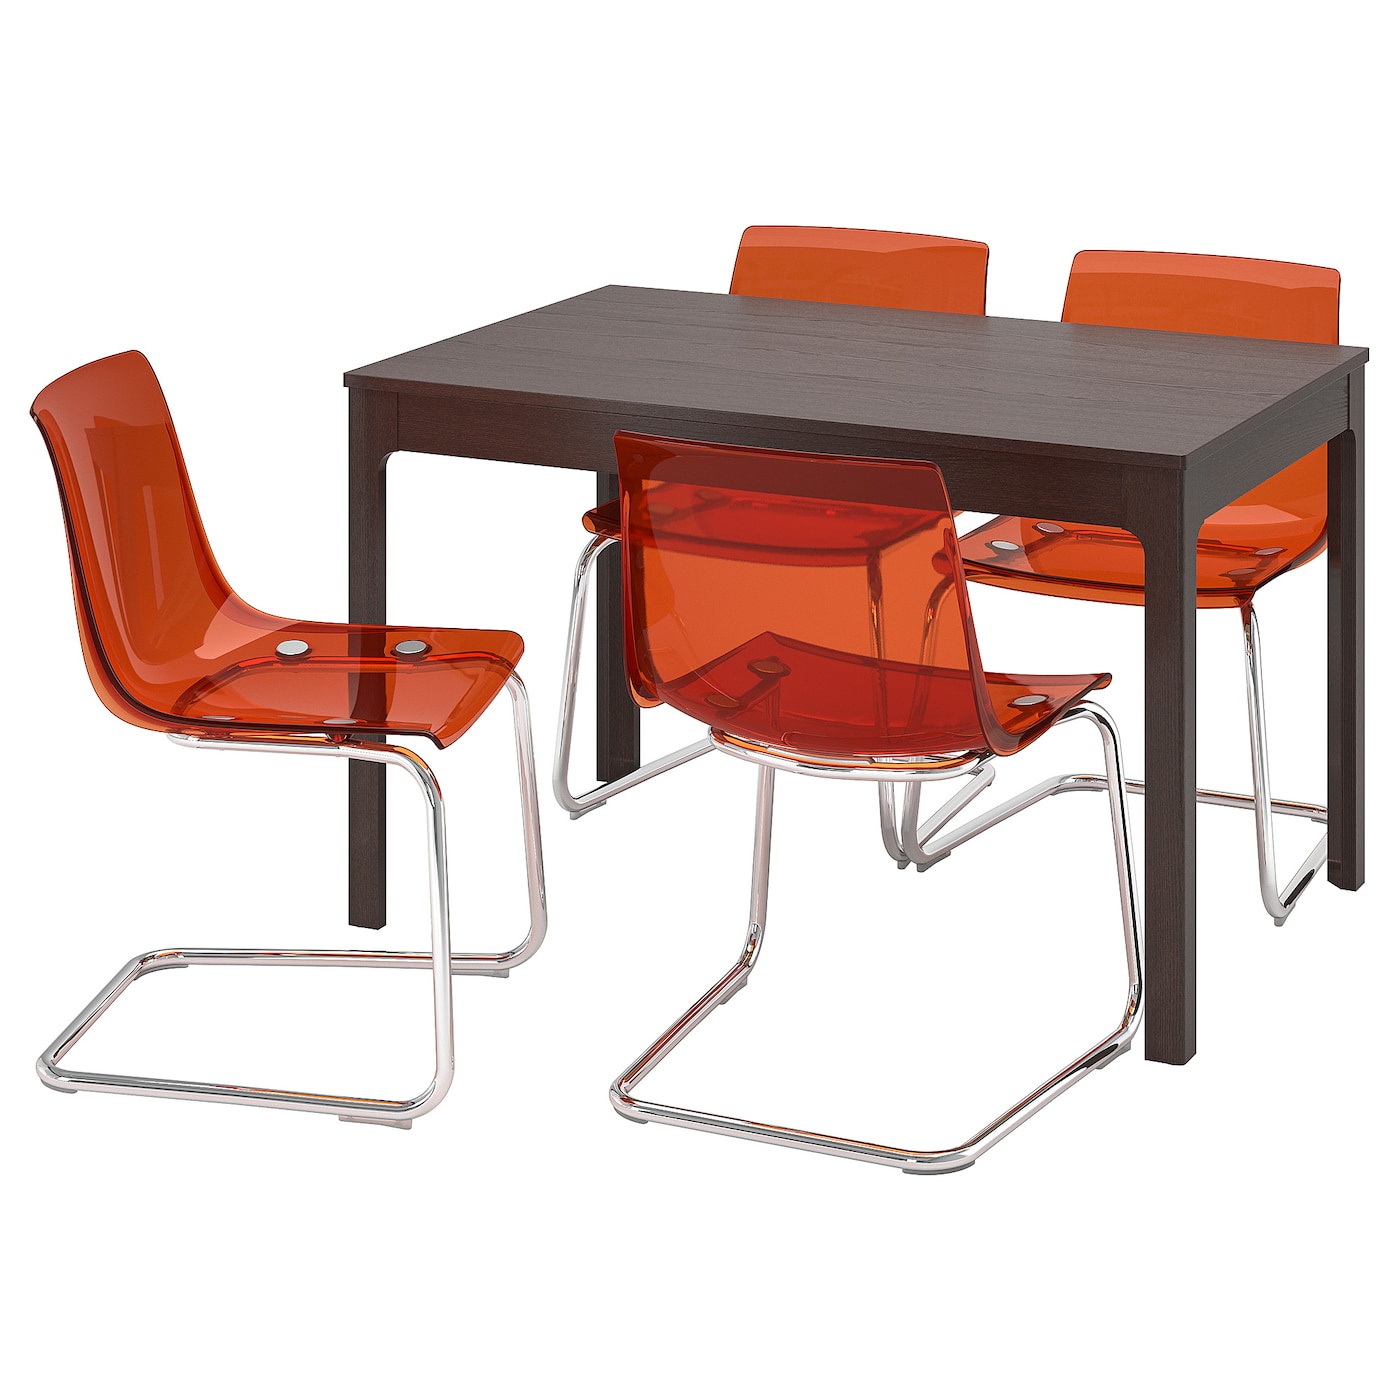 Стол и 4 стула - IKEA EKEDALEN/TOBIAS/ЭКЕДАЛЕН/ТОБИАС ИКЕА, 120х180х80 см, темно-коричневый/оранжевый